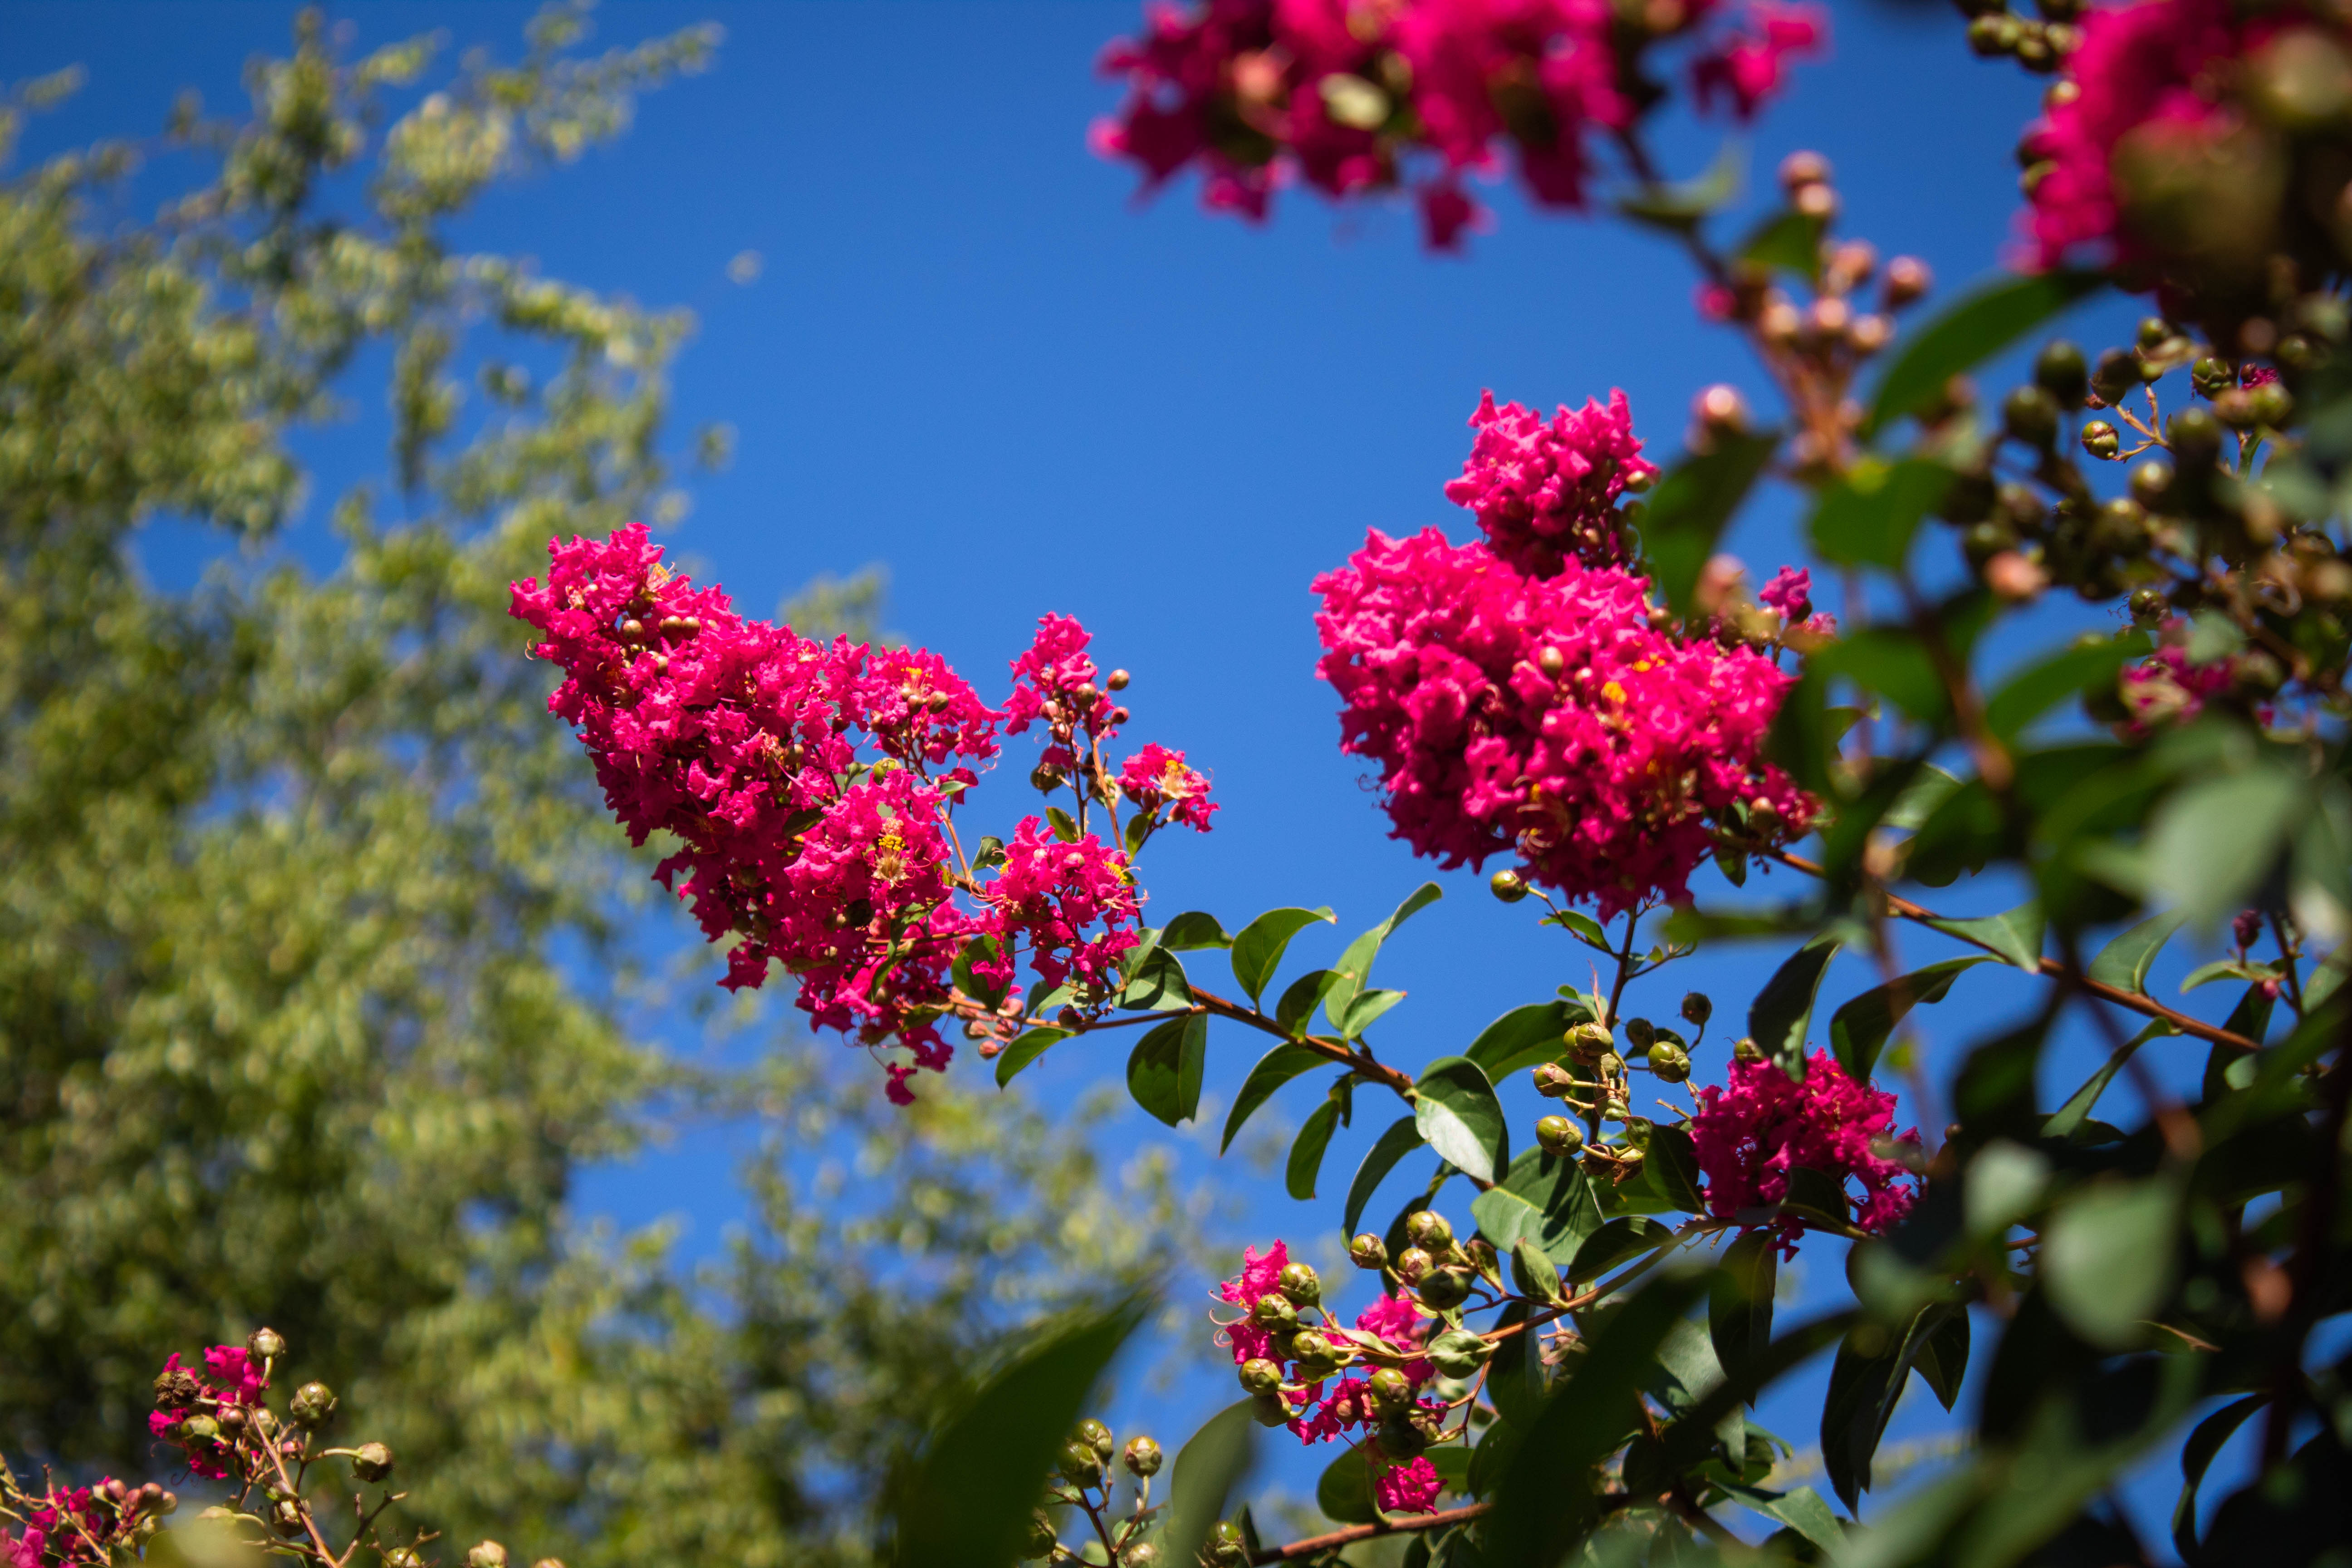 Pink crepe myrtle for Garden Bloggesrs' Bloom Day September 2018